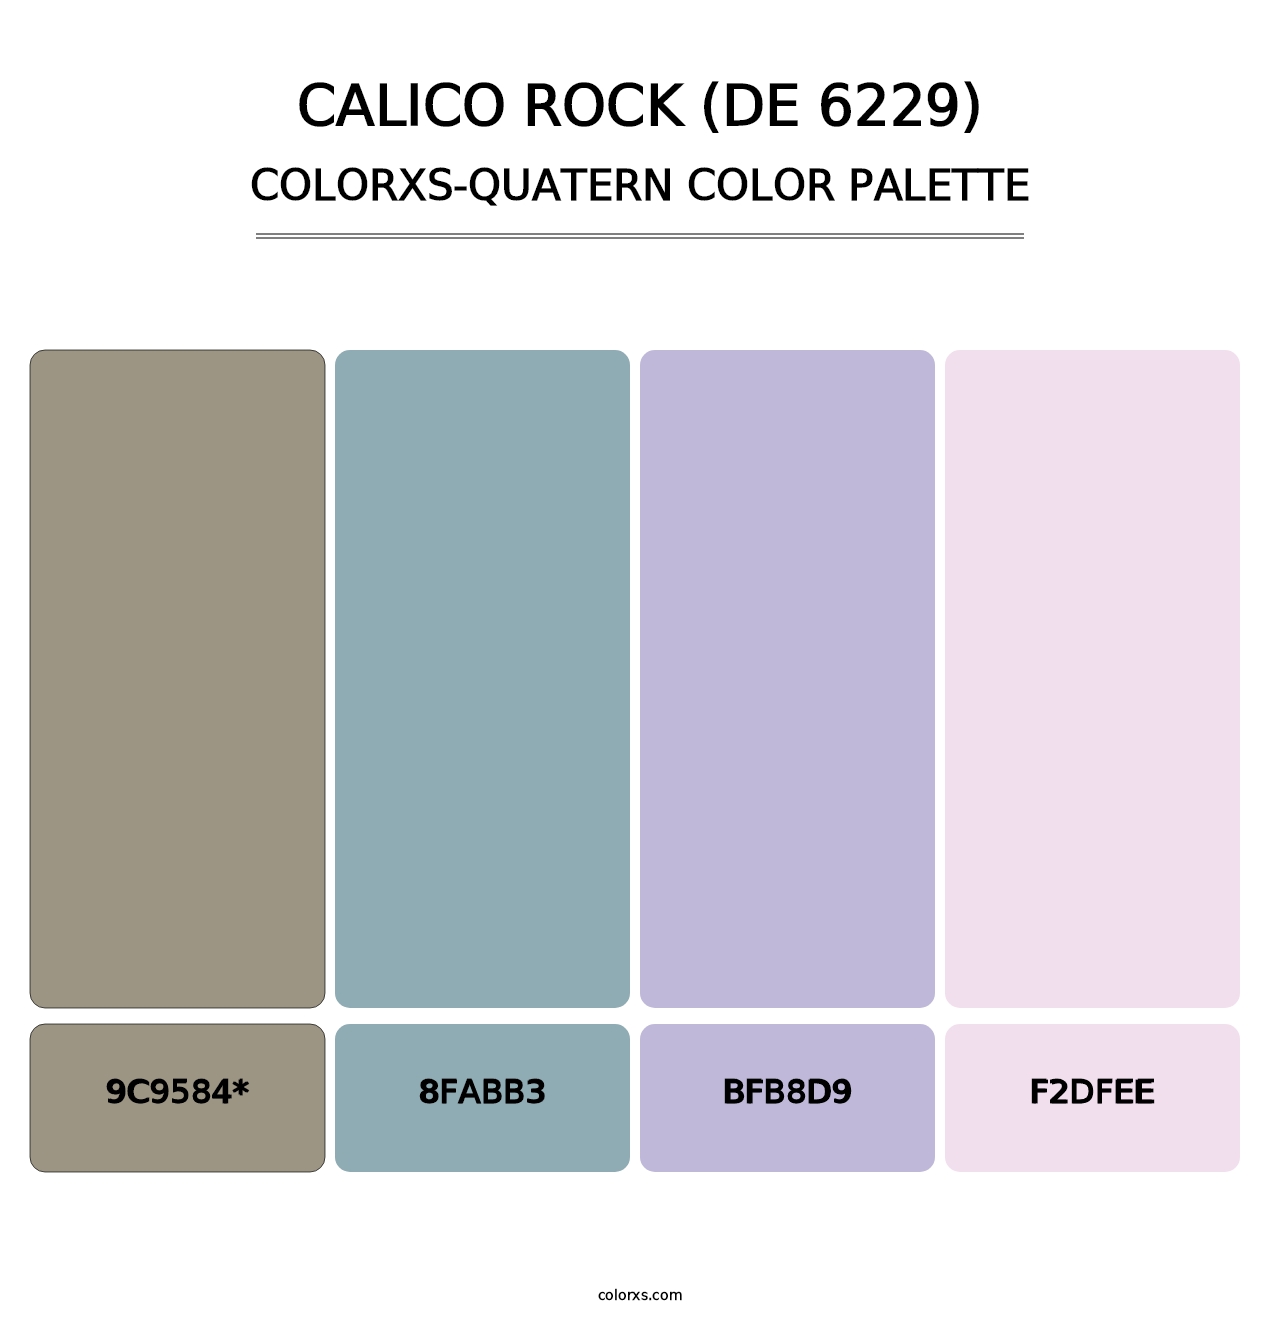 Calico Rock (DE 6229) - Colorxs Quatern Palette